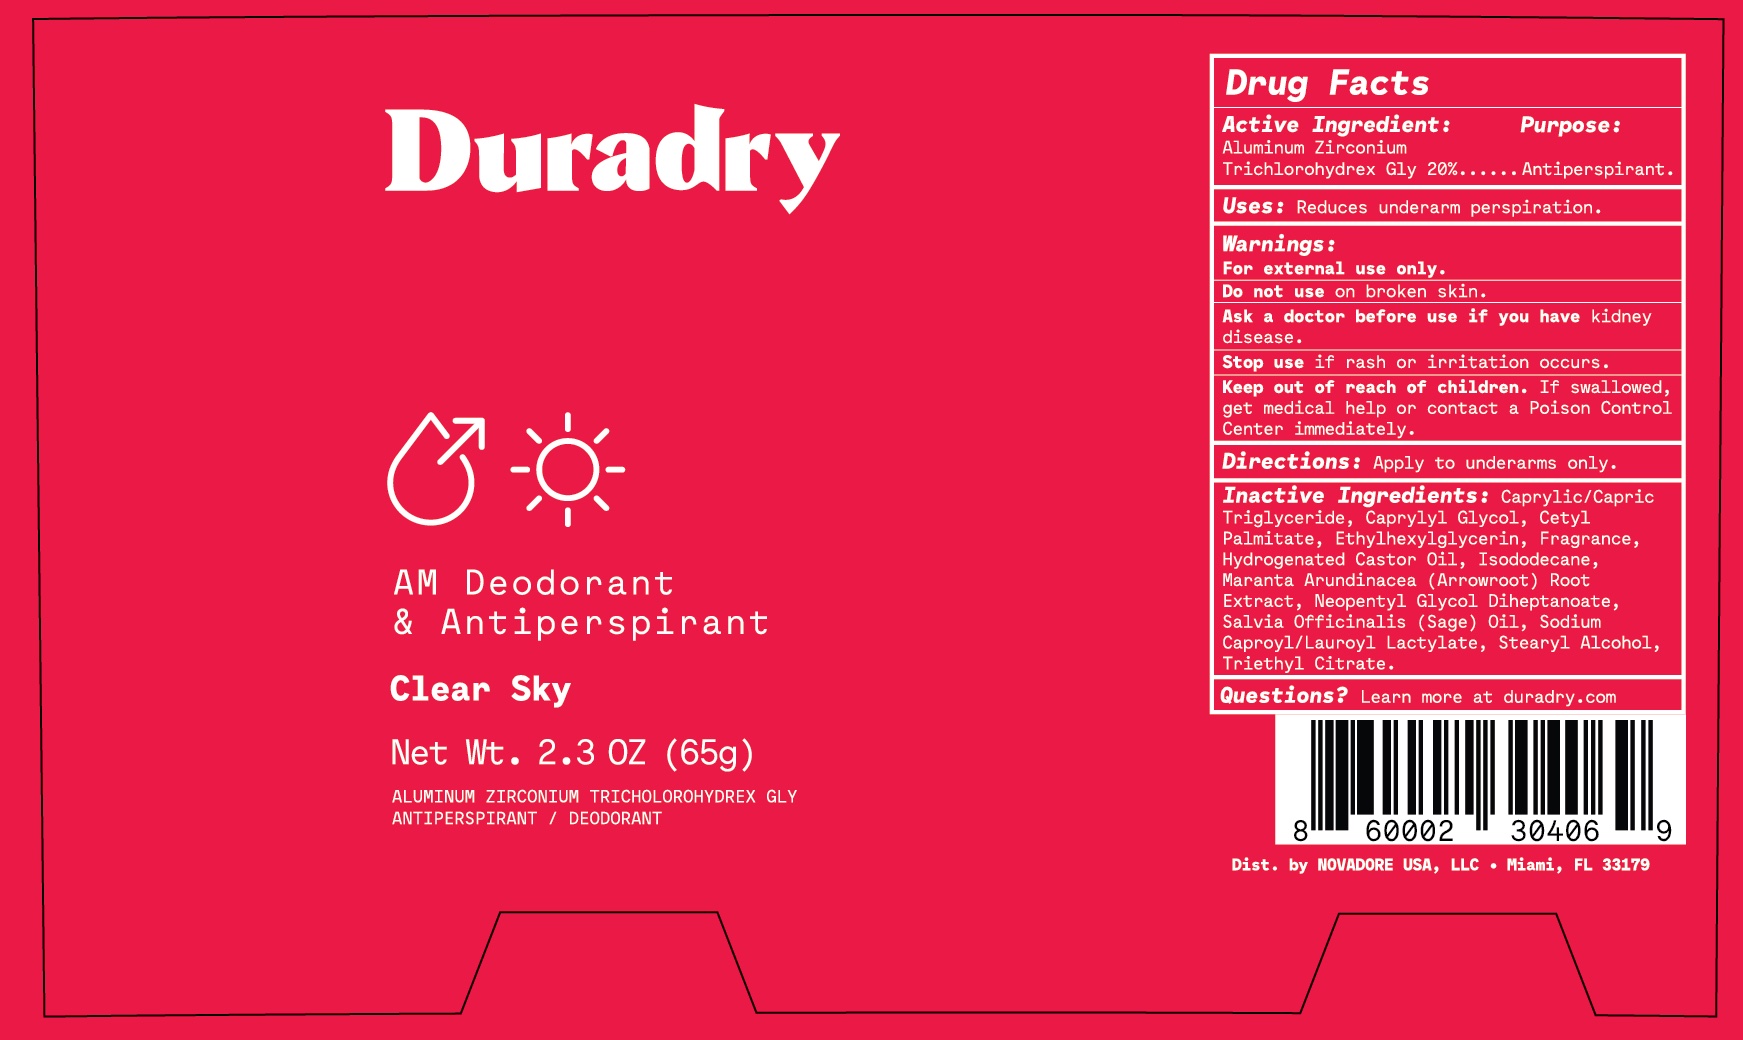 Duradry AM Clear Sky